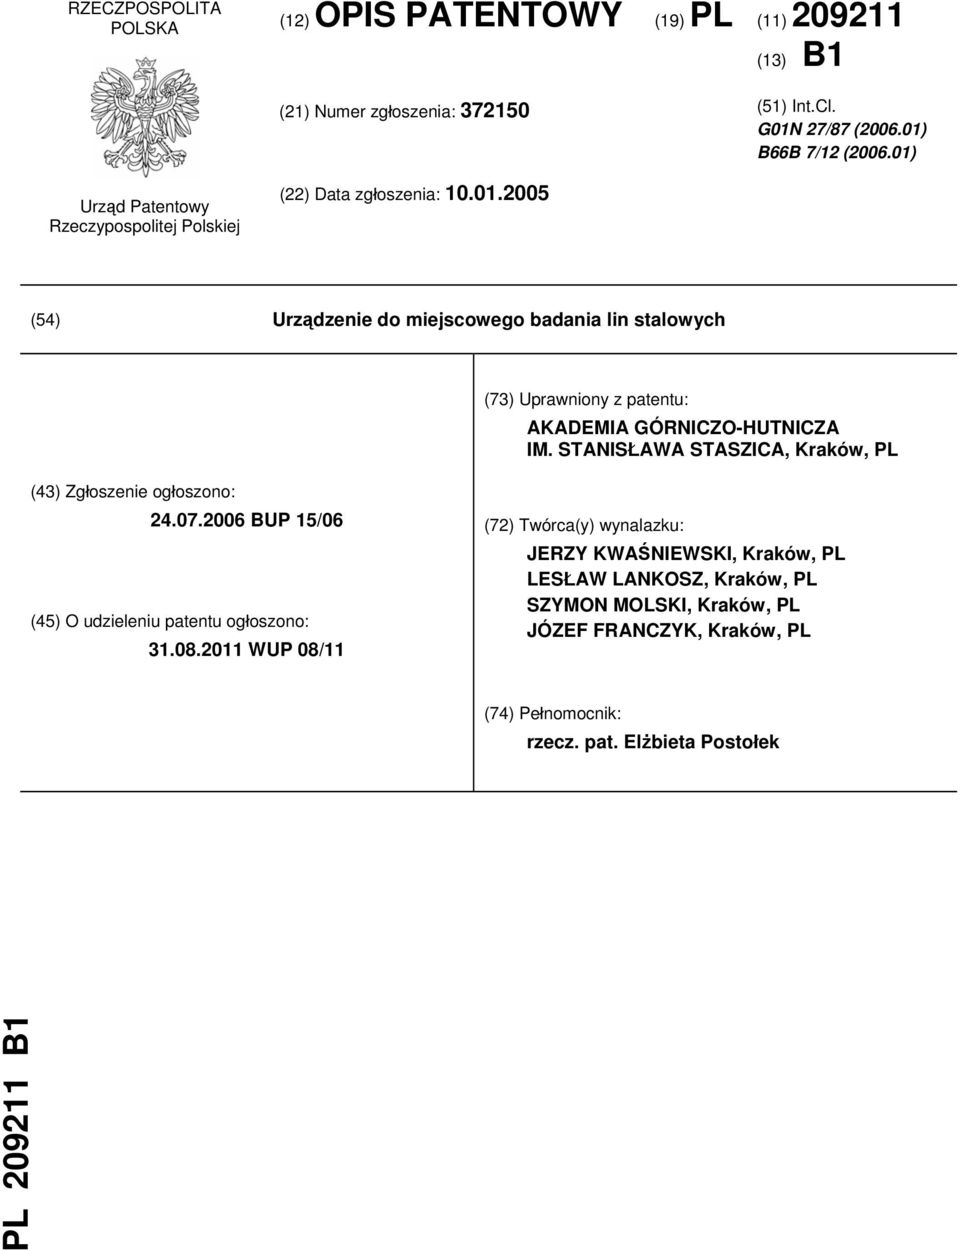 STANISŁAWA STASZICA, Kraków, PL (43) Zgłoszenie ogłoszono: 24.07.2006 BUP 15/06 (45) O udzieleniu patentu ogłoszono: 31.08.